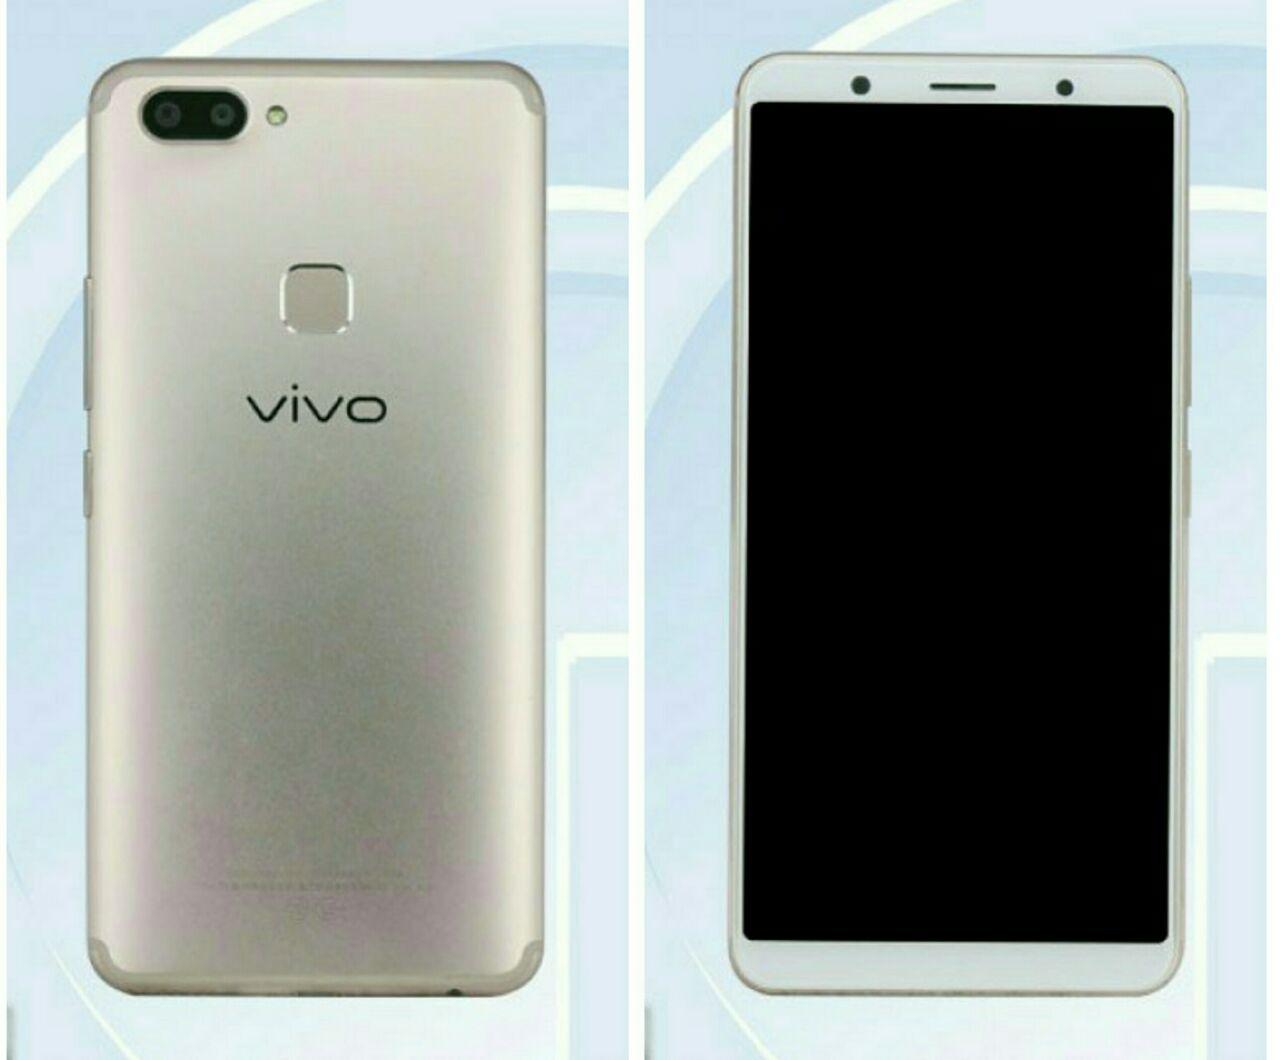 موبایل Vivo X20 و Vivo X20A در TENNA دیده شدند